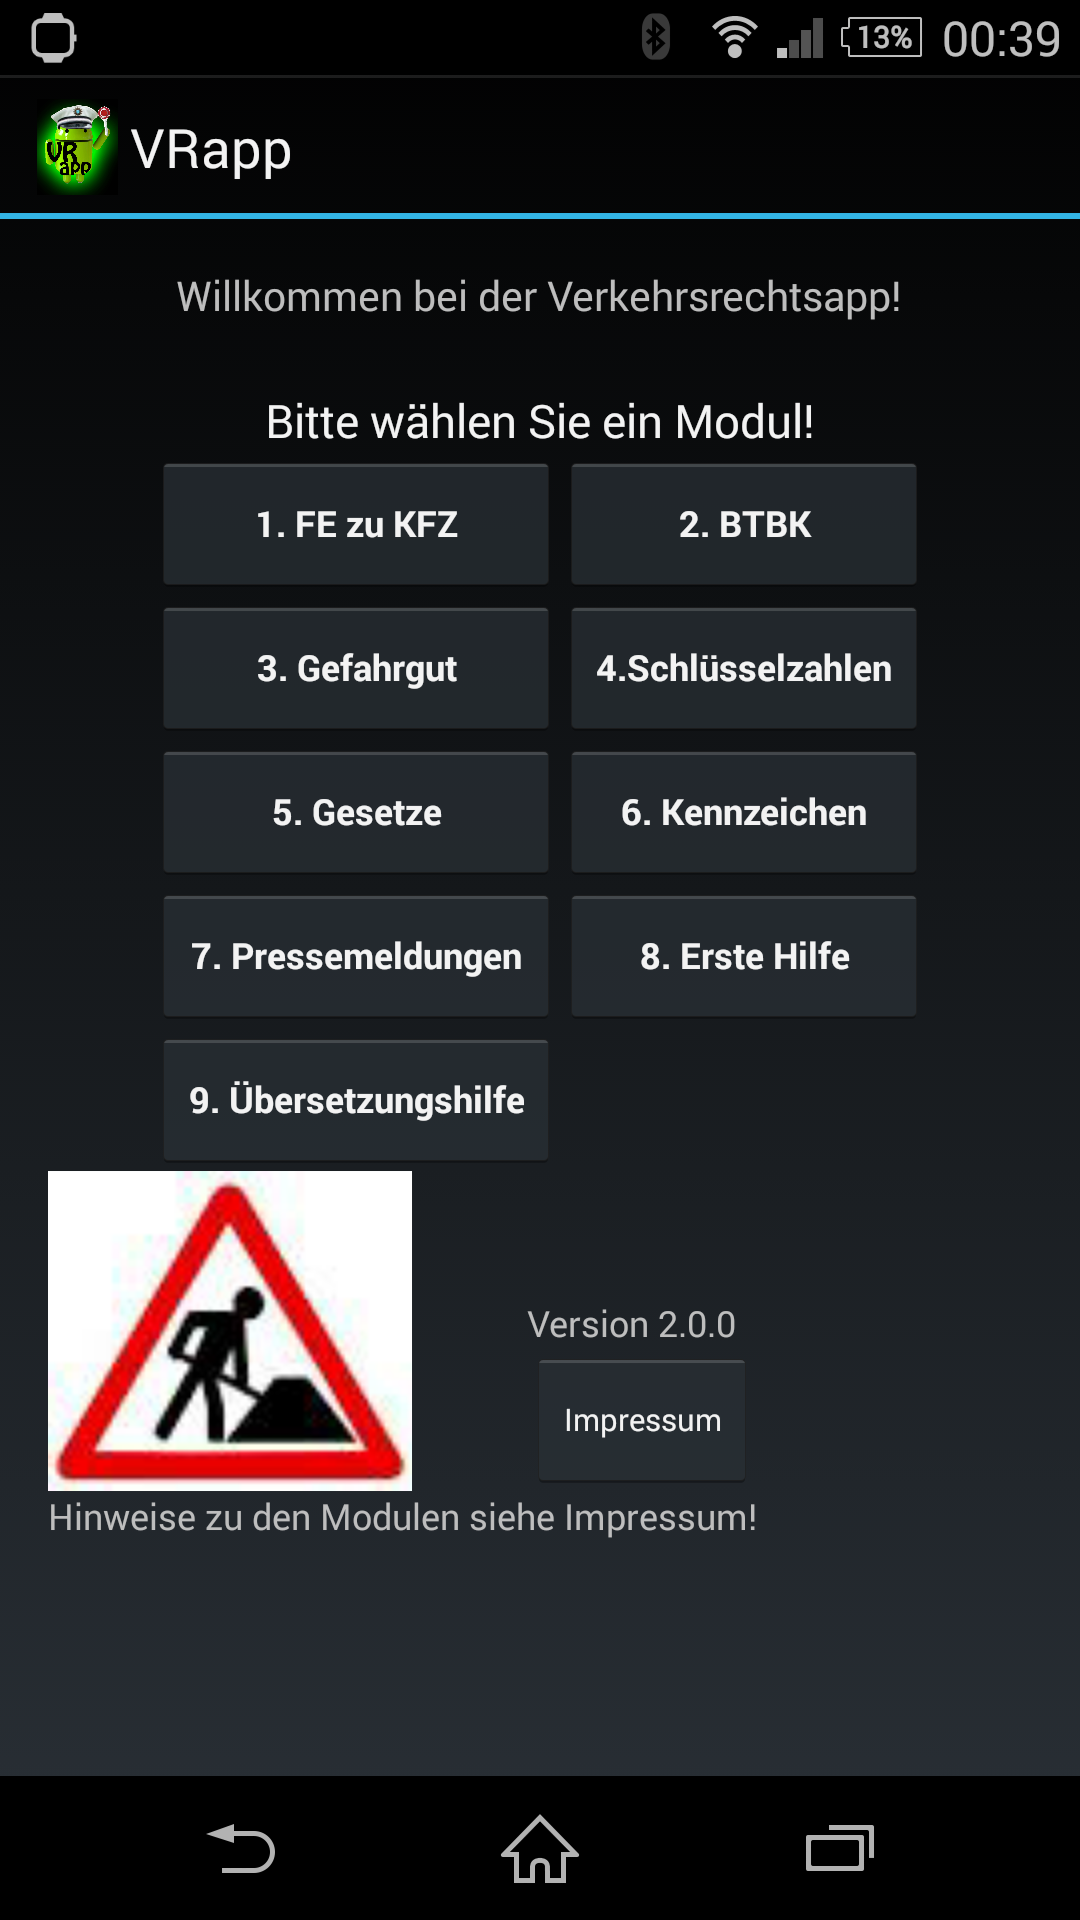 Android application VRapp - Verkehrsrechtsapp screenshort